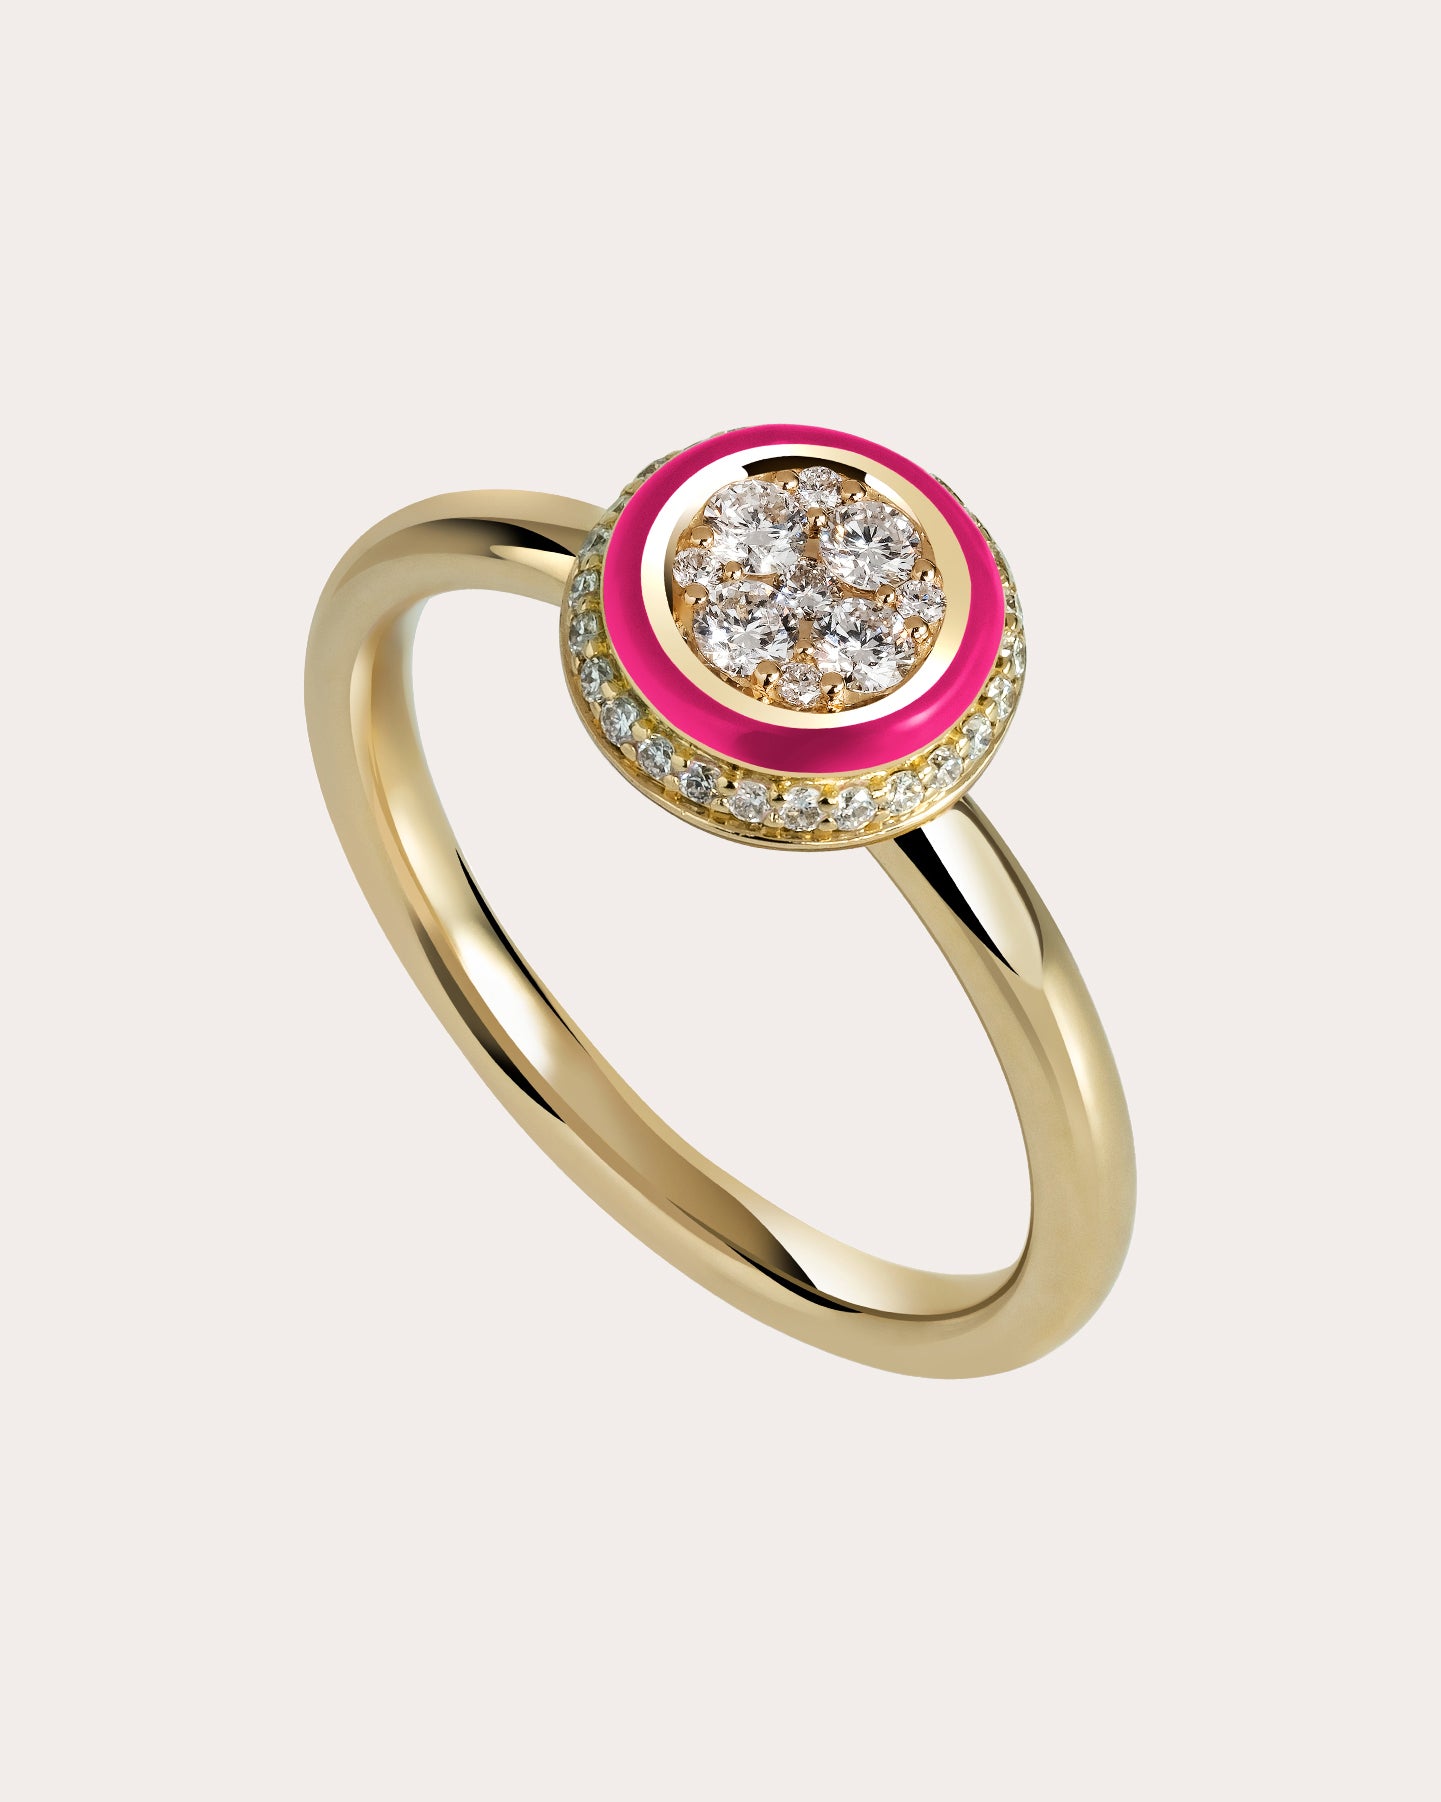 Hot Pink CZ Brilliant Cushion Cut Black 925 Silver Engagement Wedding Ring  | eBay